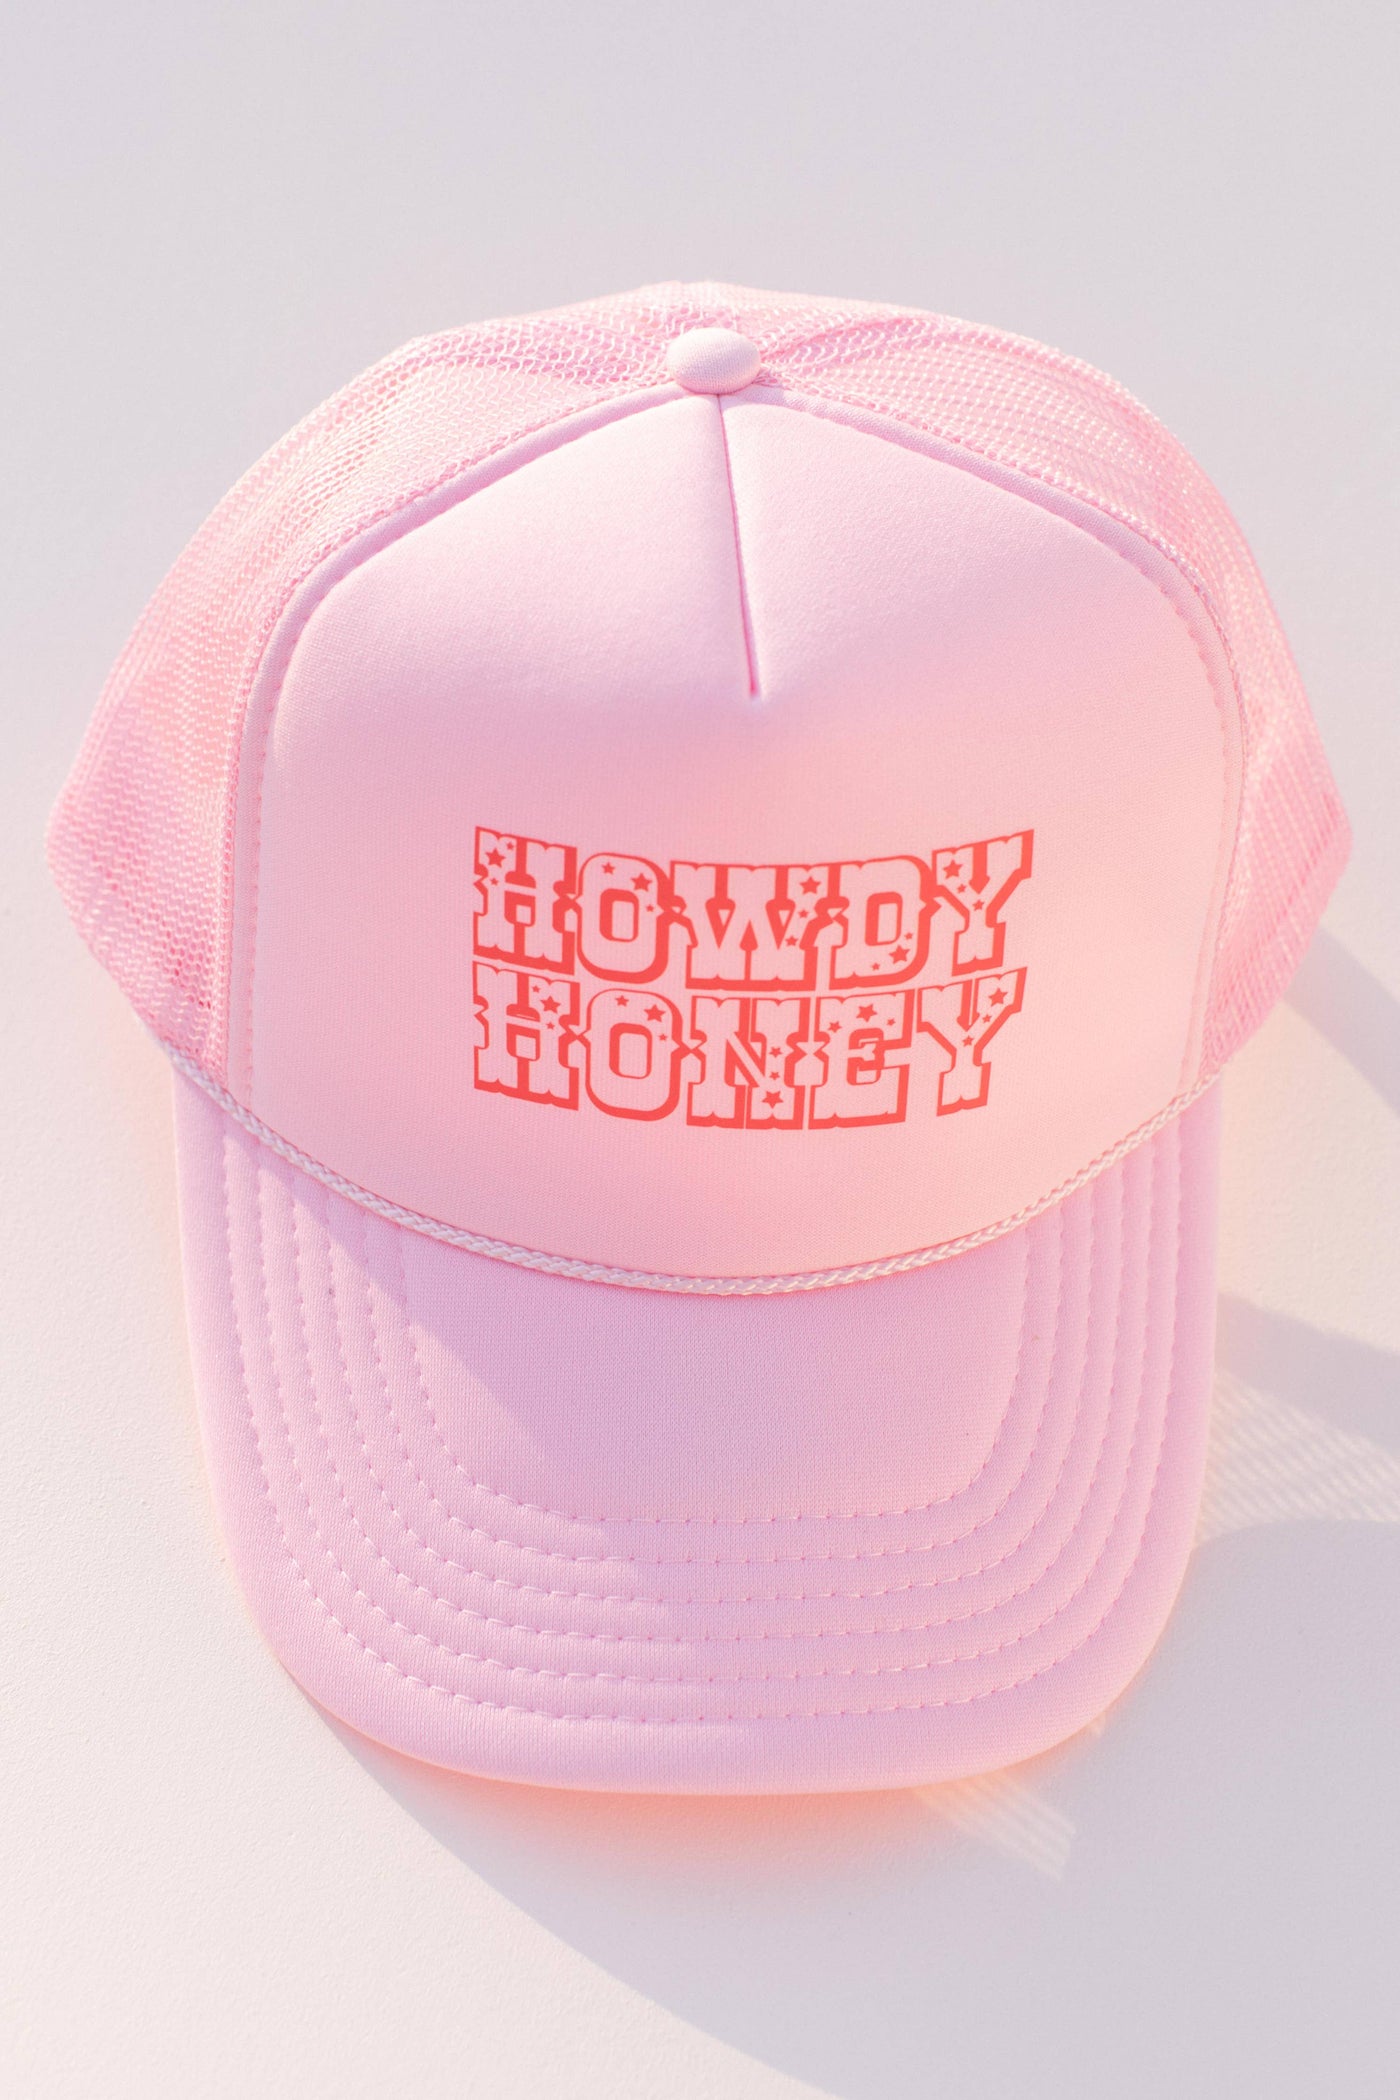 Western Howdy Honey Trucker Cap